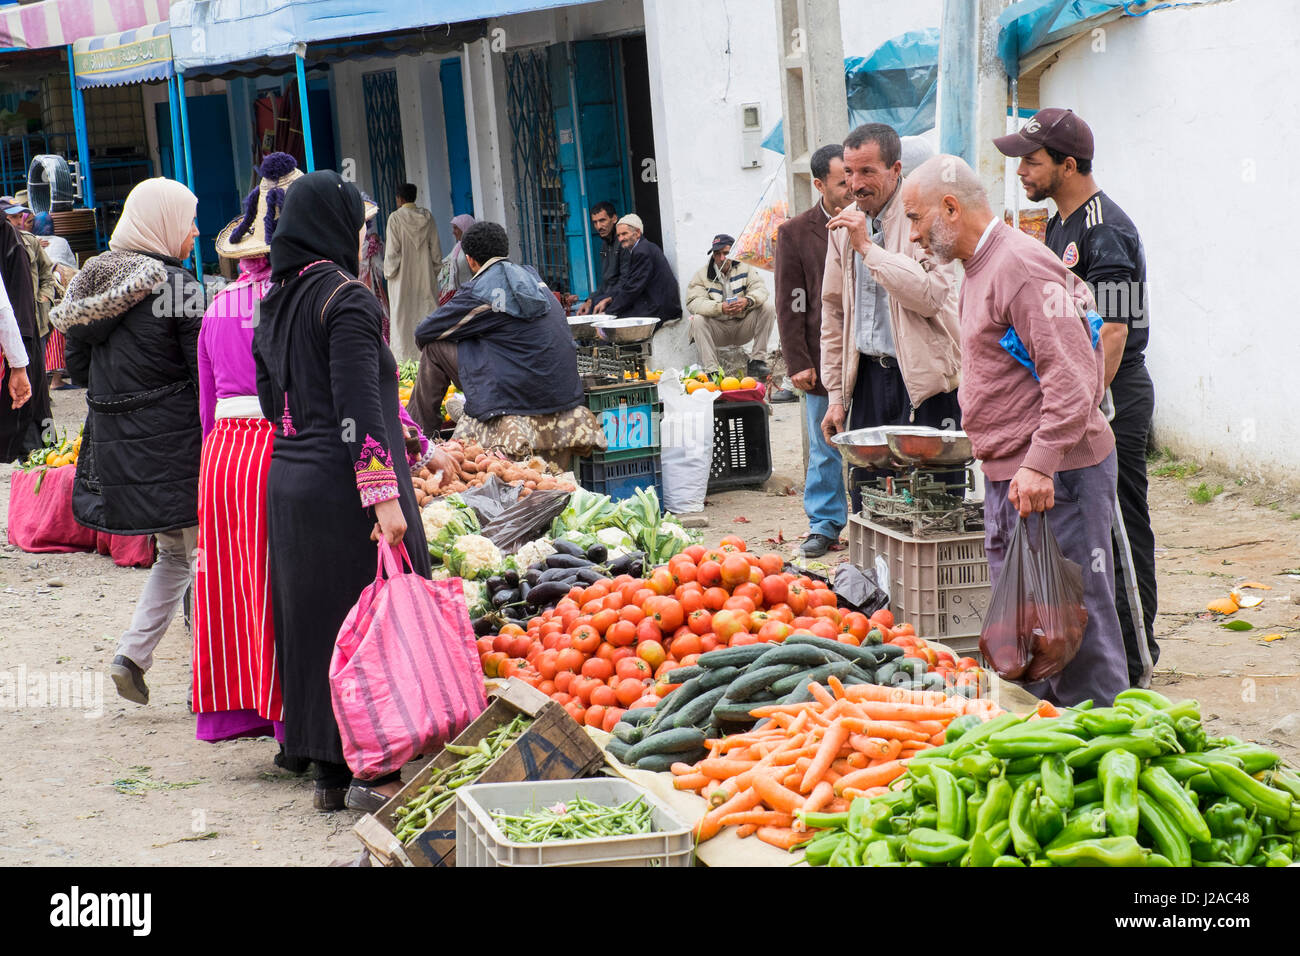 Marokko, Chefchaouen oder Chaouen ist bekannt für seine engen Gassen. Gemüsemarkt. (Nur zur redaktionellen Verwendung) Stockfoto